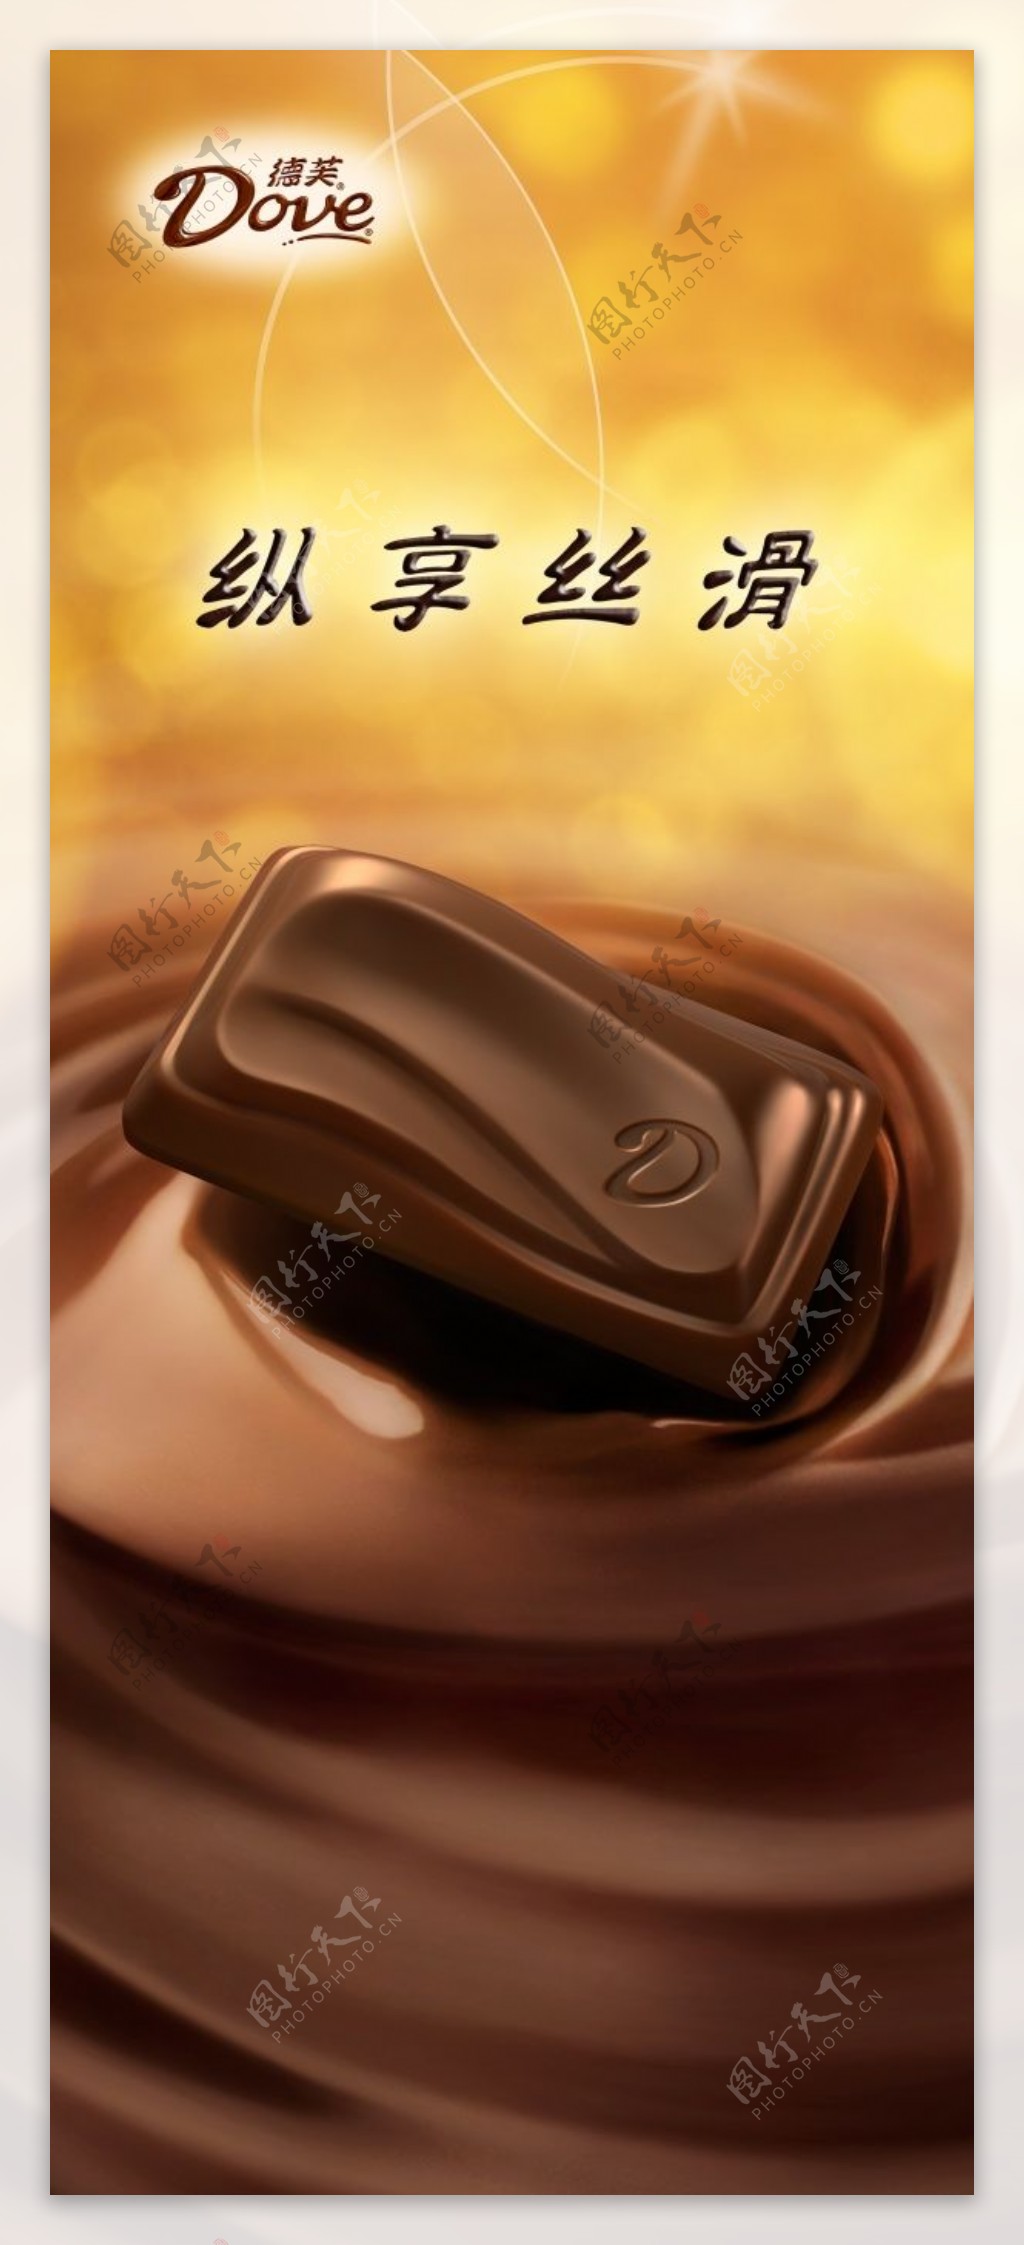 德芙巧克力宣传海报设计